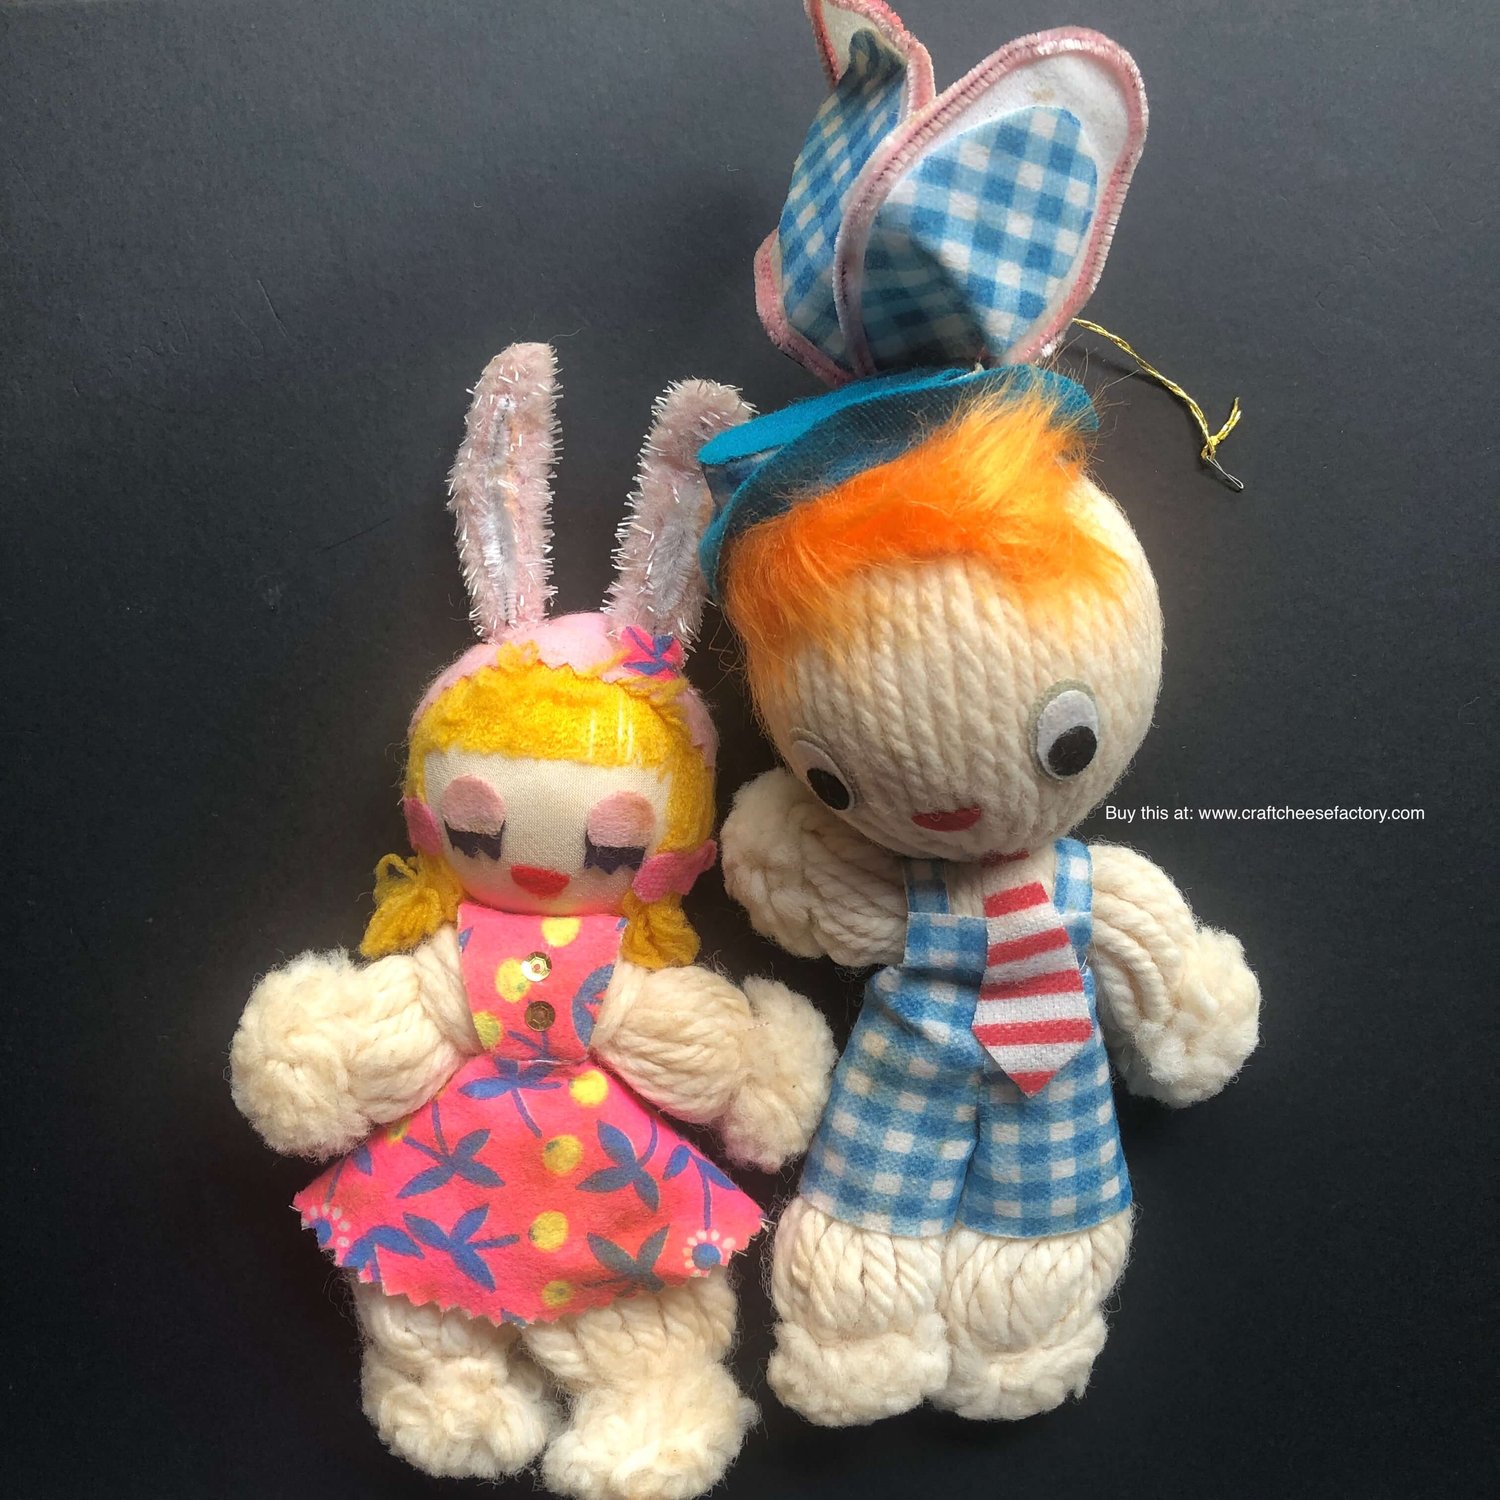 azalea's dolls on Tumblr